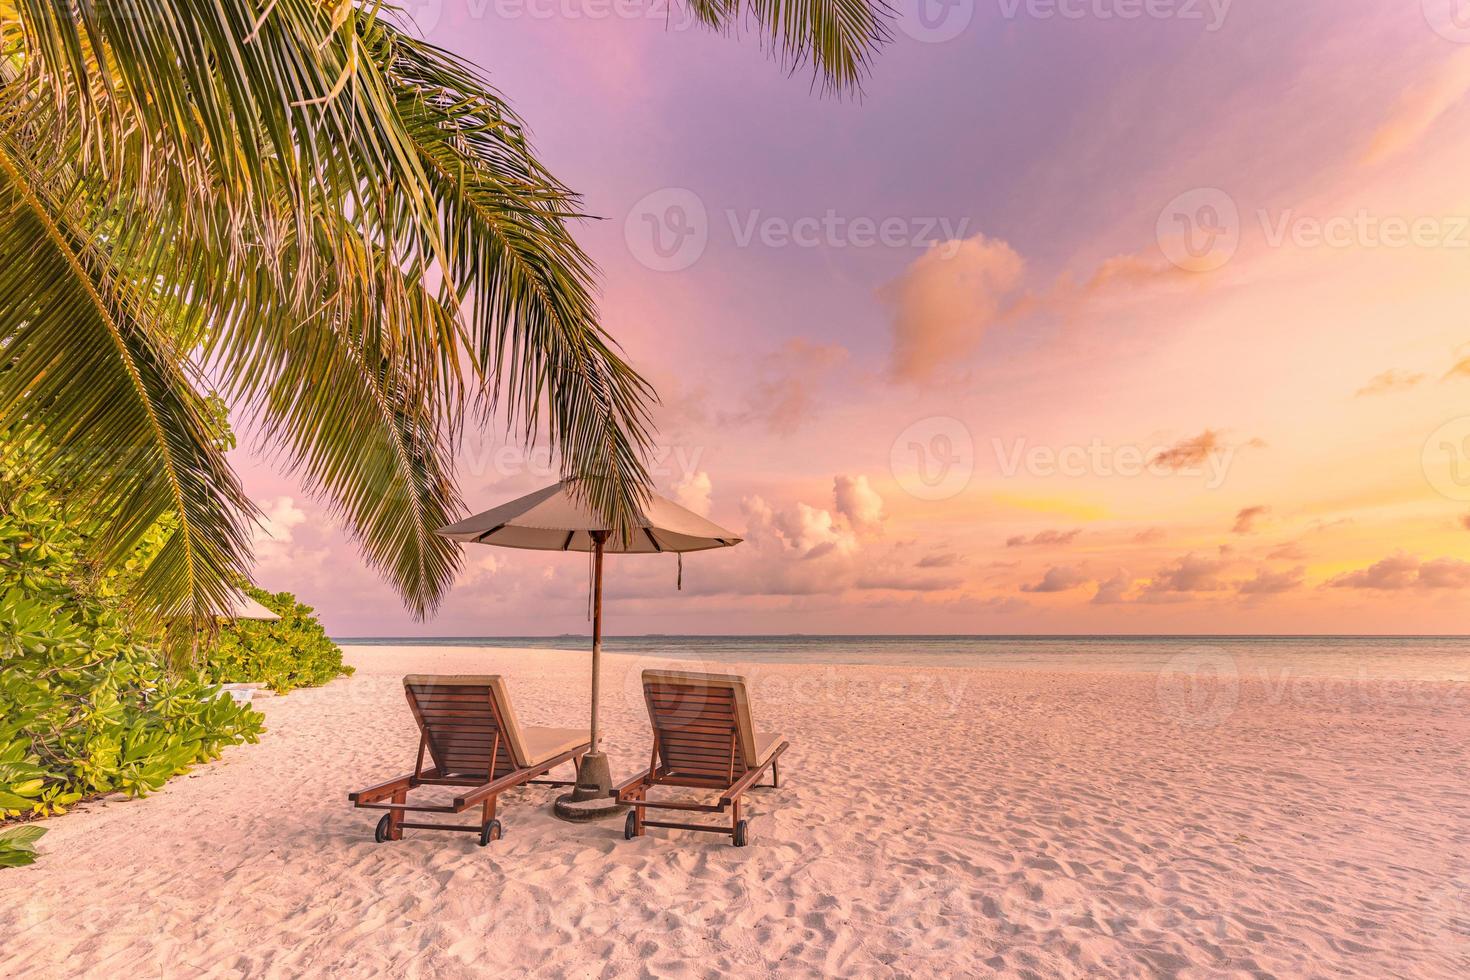 bellissimo scenario del tramonto tropicale, due lettini, lettini, ombrellone sotto la palma. sabbia bianca, vista mare con orizzonte, cielo crepuscolare colorato, calma e relax. hotel ispiratore del resort sulla spiaggia foto